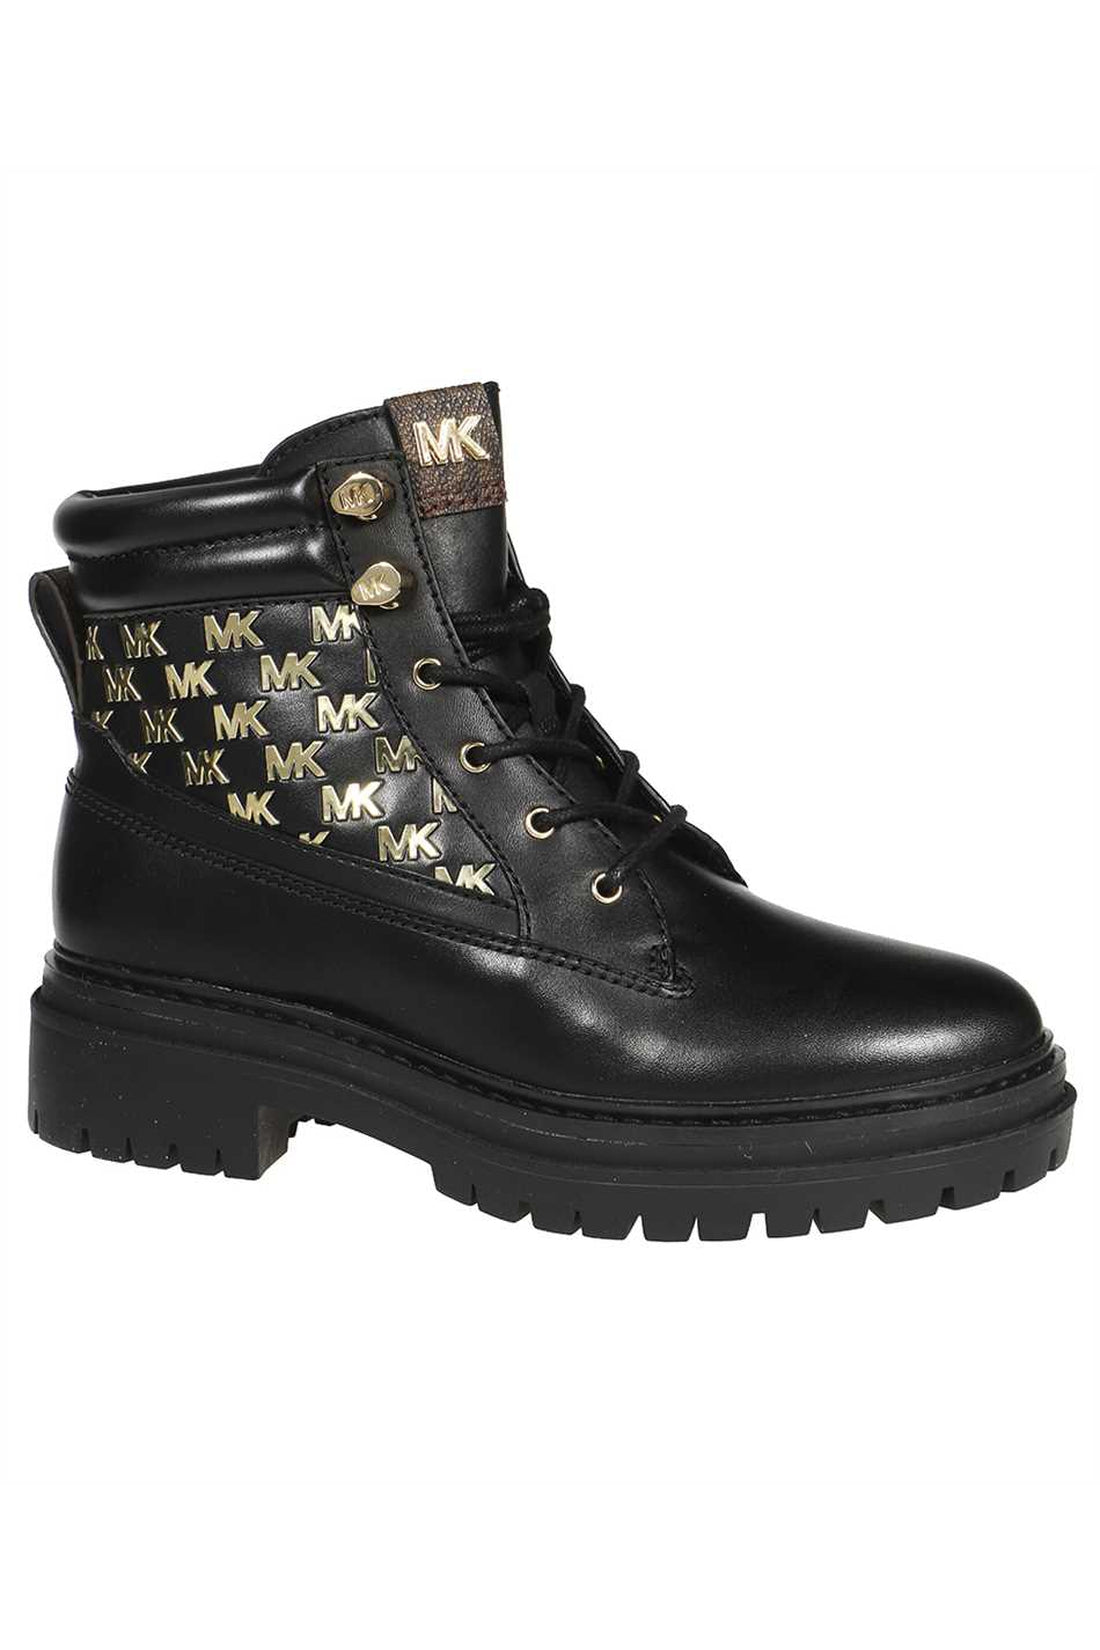 MICHAEL MICHAEL KORS-OUTLET-SALE-Leather lace-up shoes-ARCHIVIST